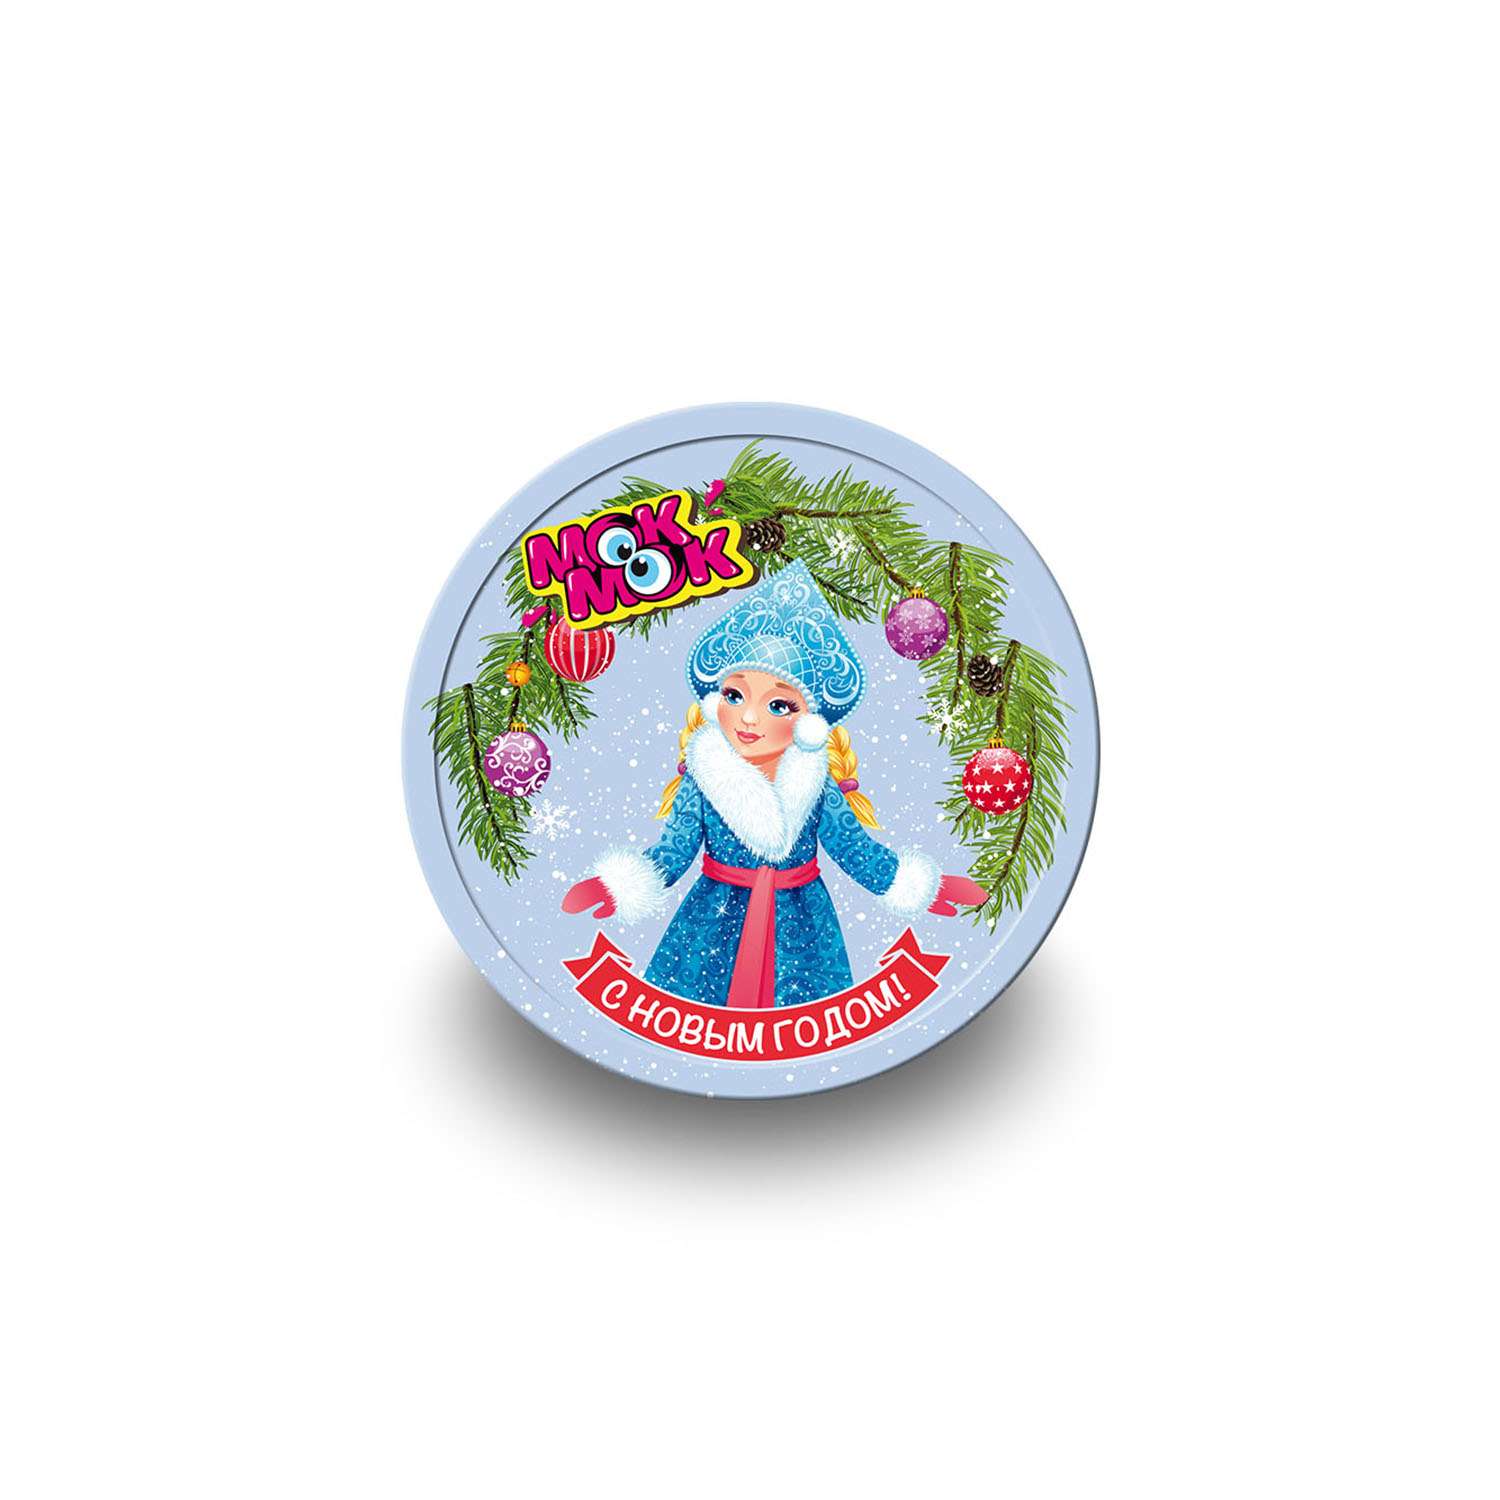 Молочный шоколад Мок-Мок детский новогодний в форме медали символ нового года 25 шт. по 25 г - фото 5